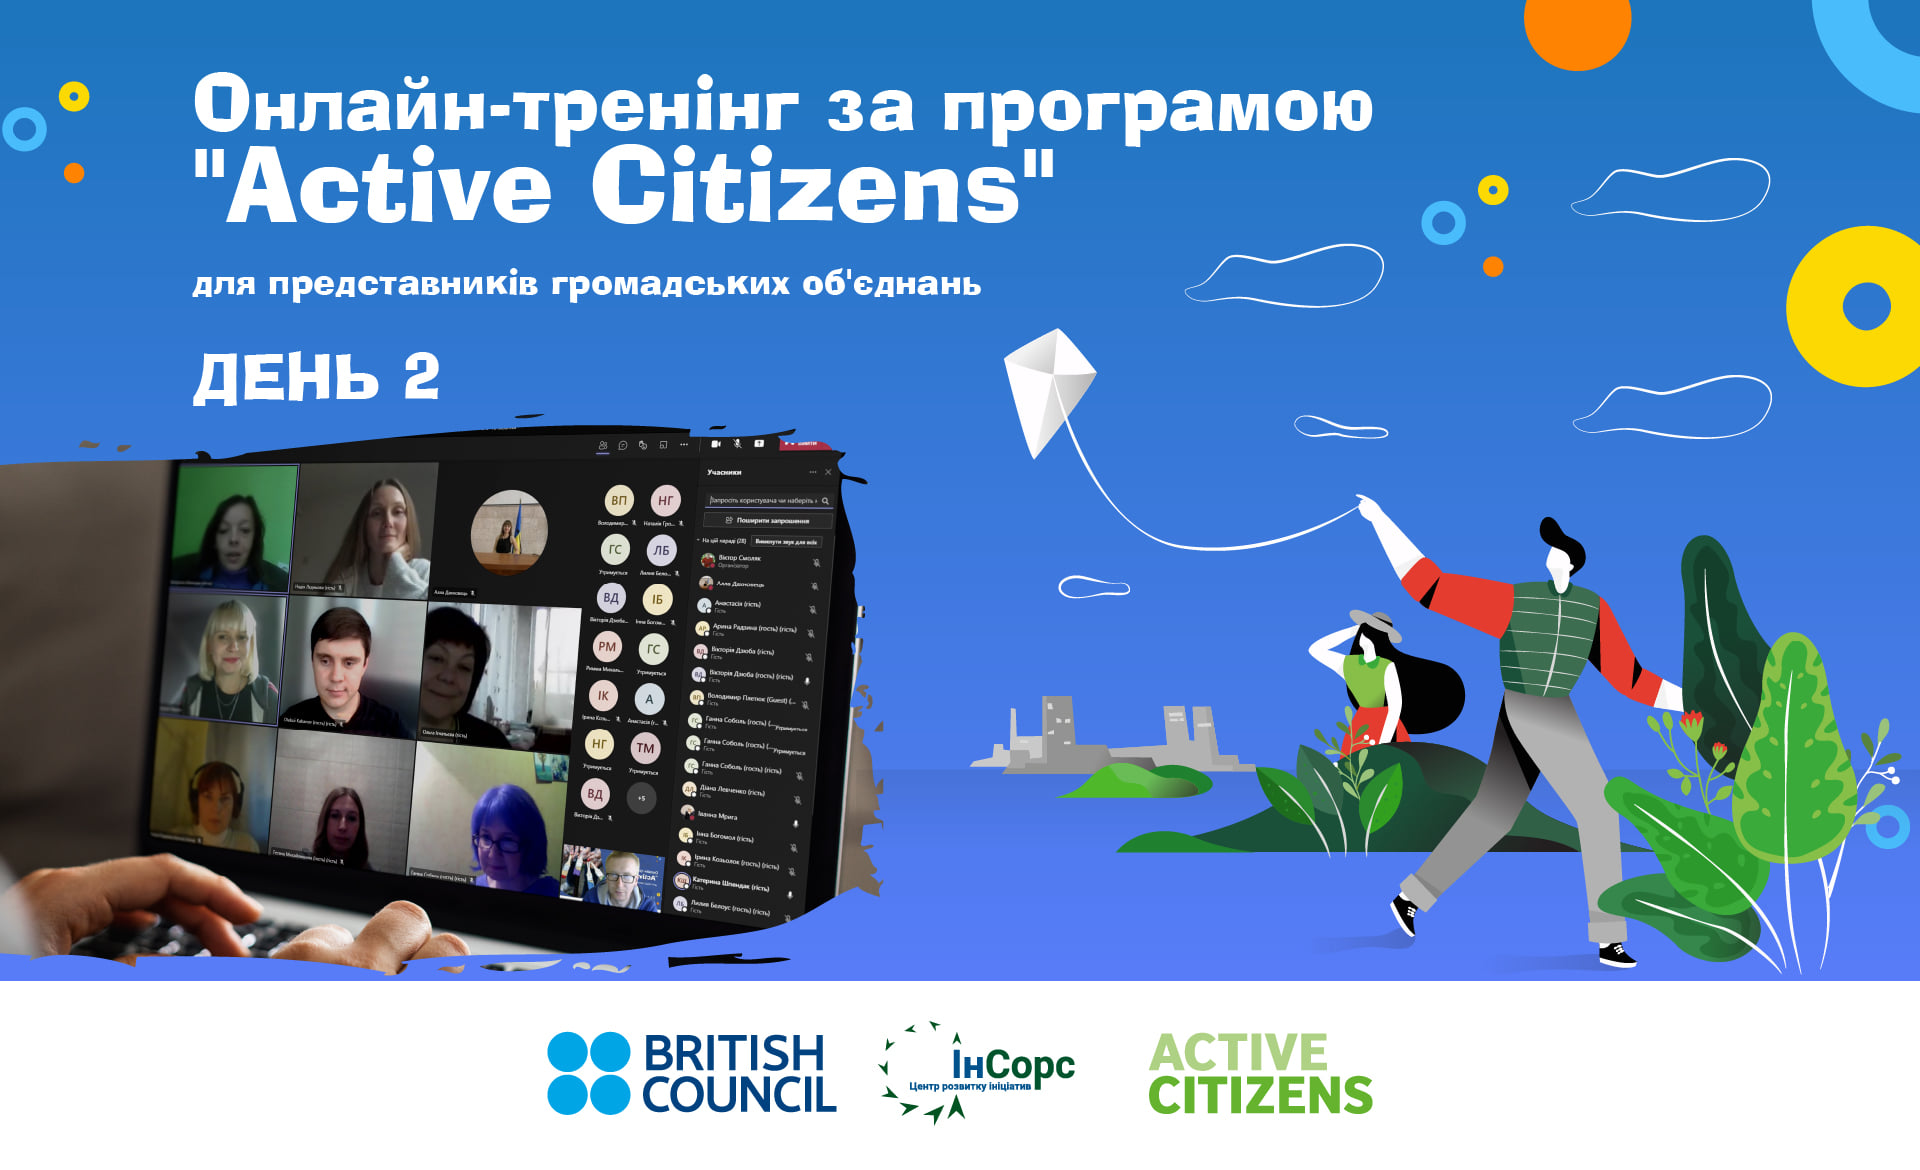 Другий день онлайн-тренінгу за програмою «Active Citizens» позаду.